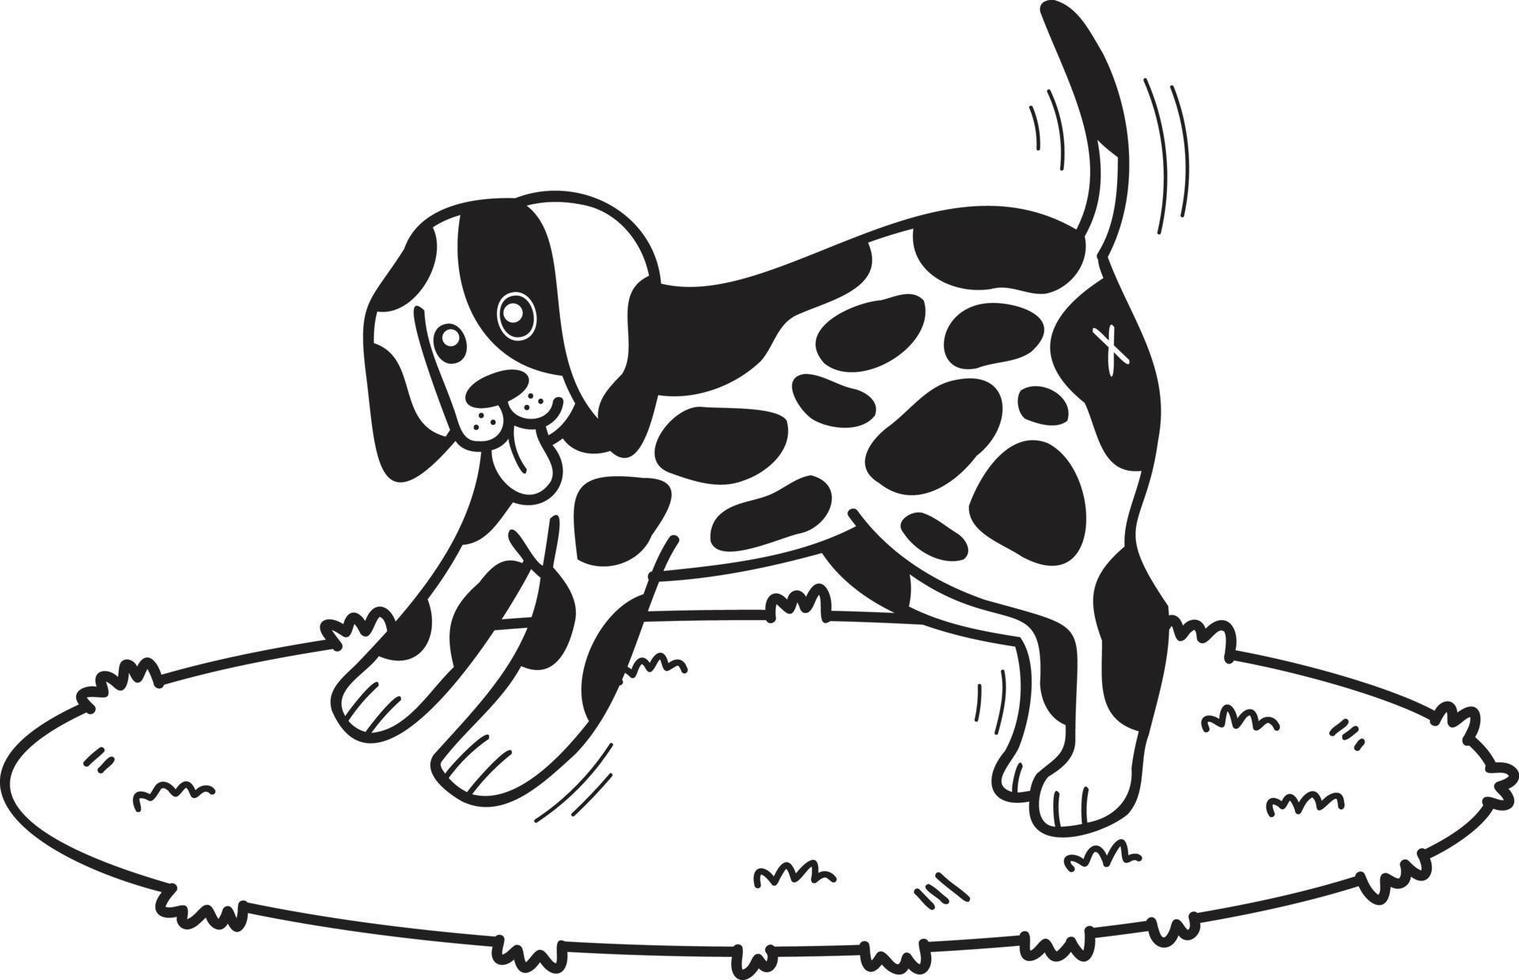 chien dalmatien dessiné à la main illustration de marche dans un style doodle vecteur